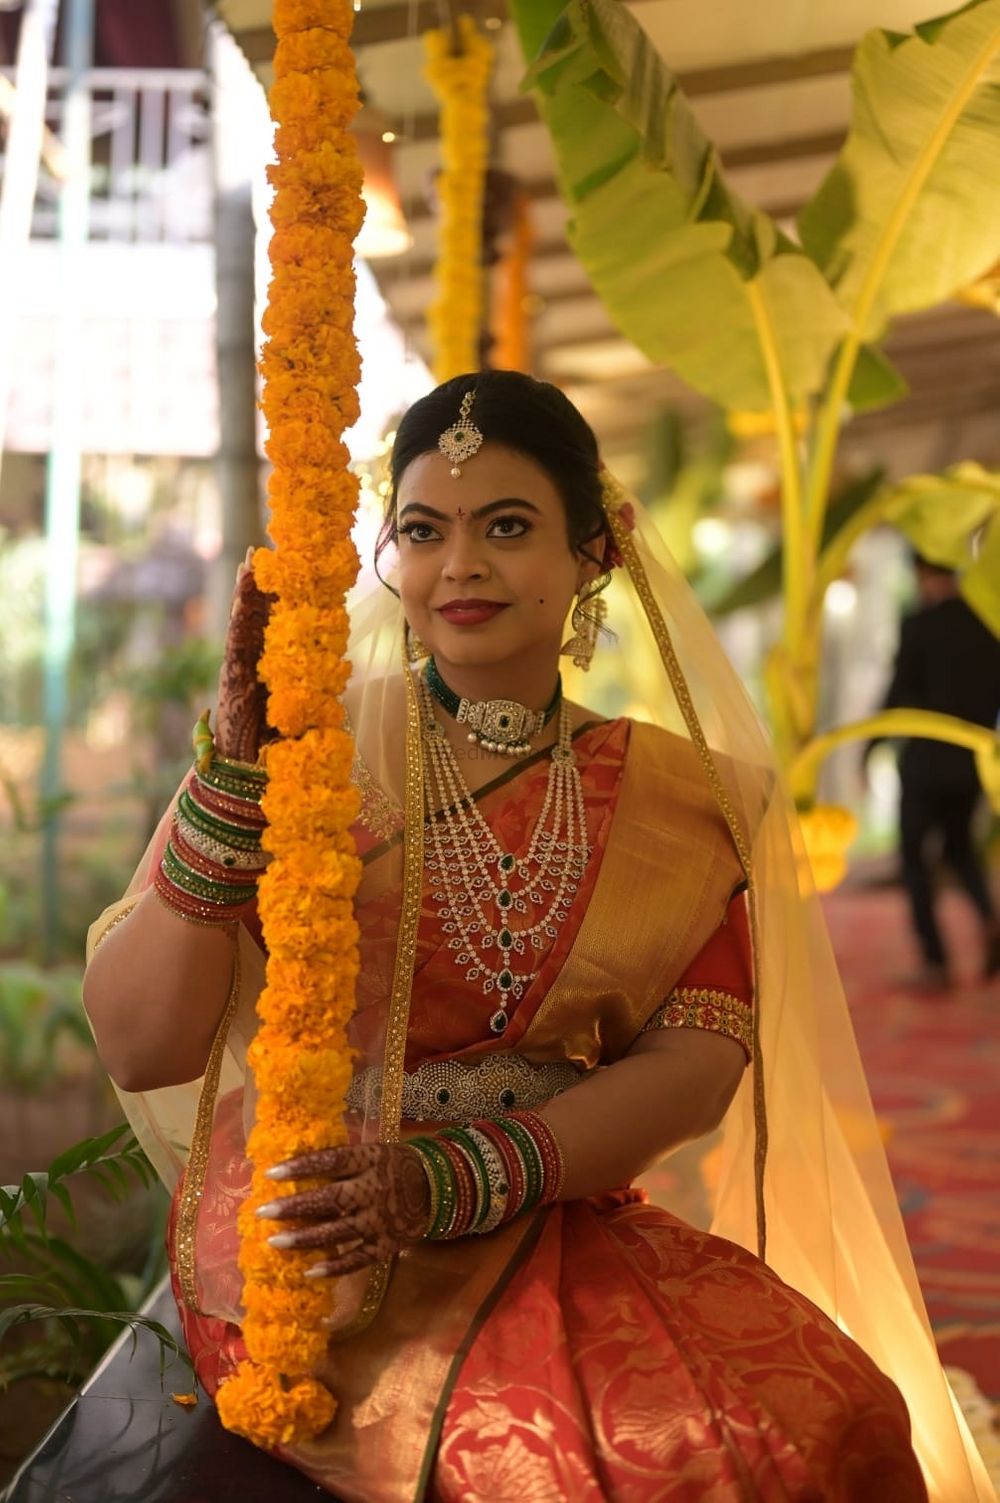 Photo From Shravya  - By Brides by Radhika Dave